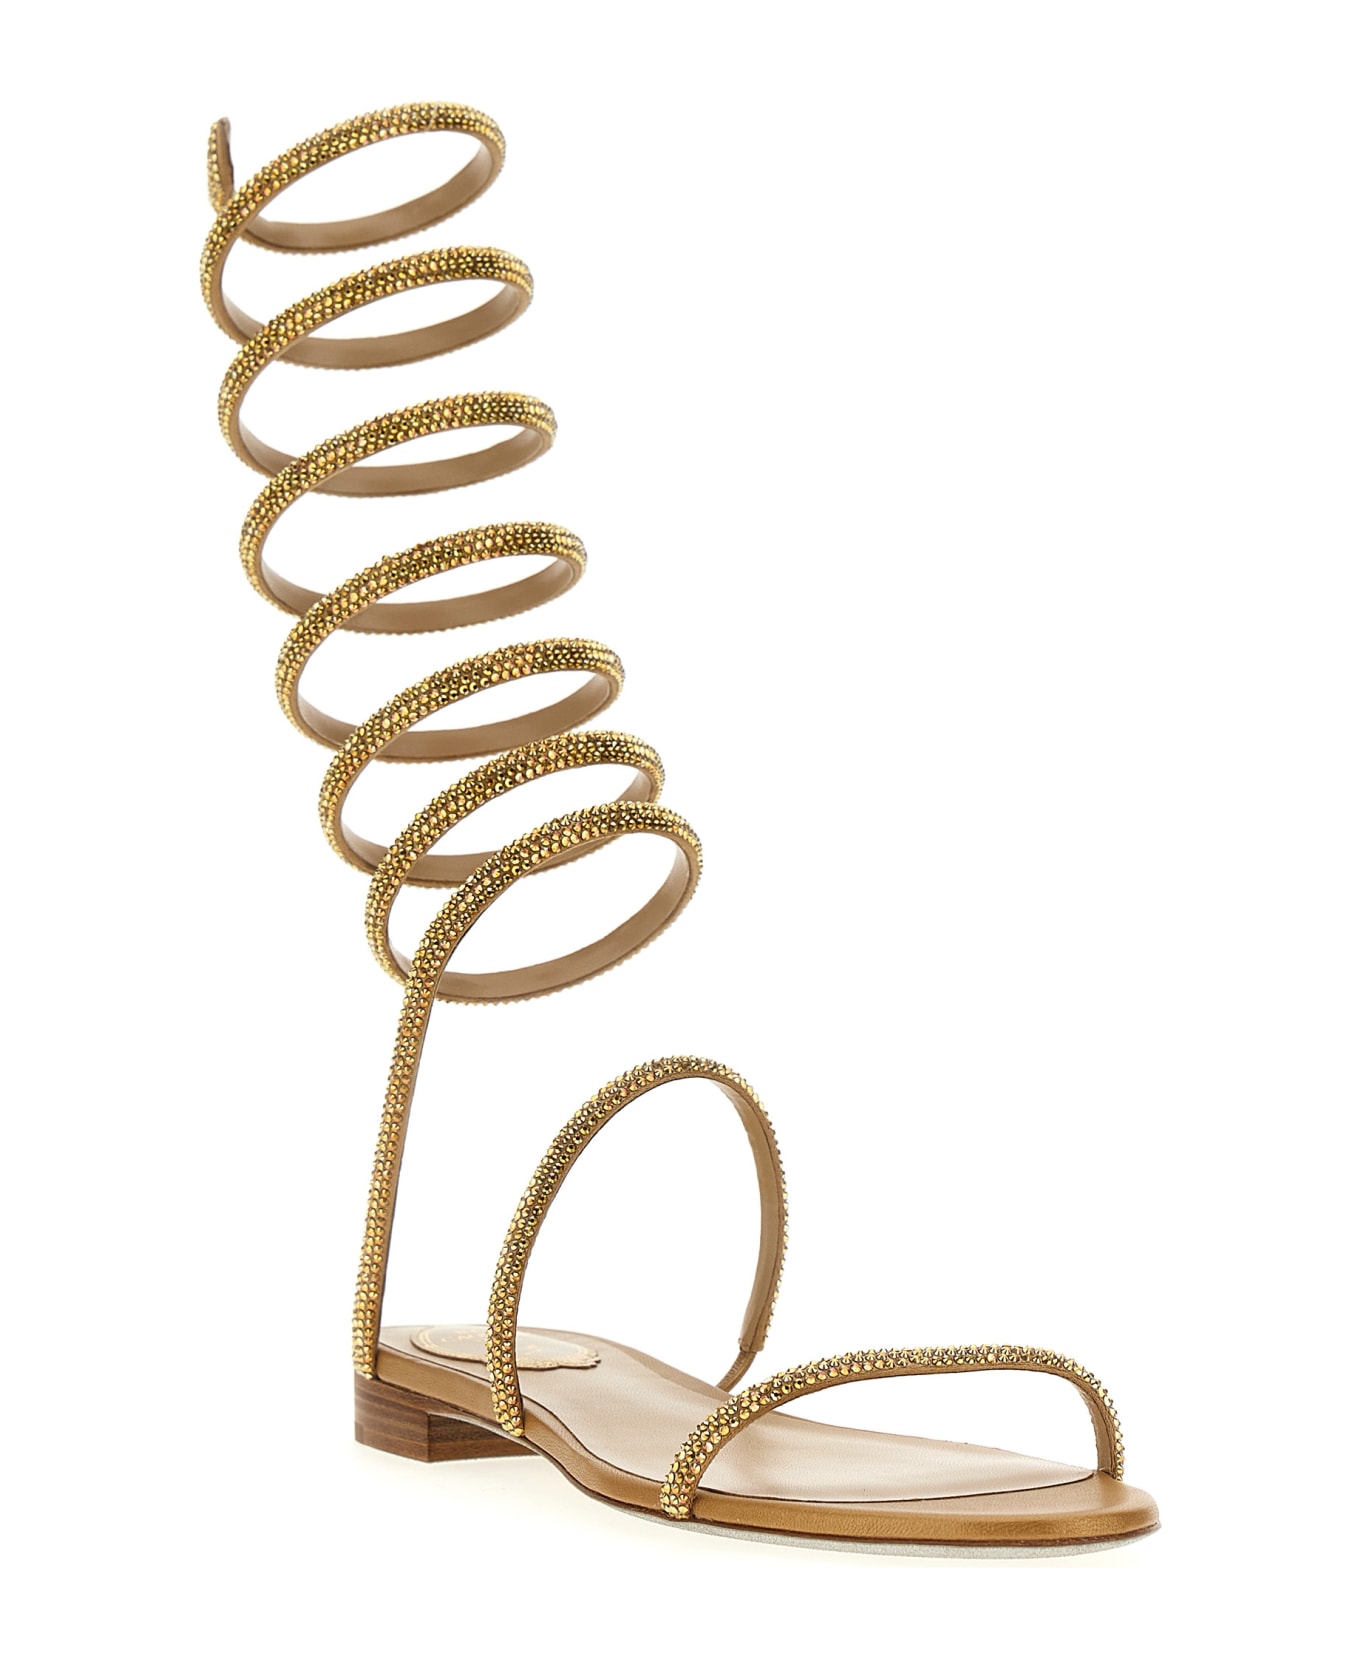 René Caovilla 'supercleo' Sandals - Gold サンダル